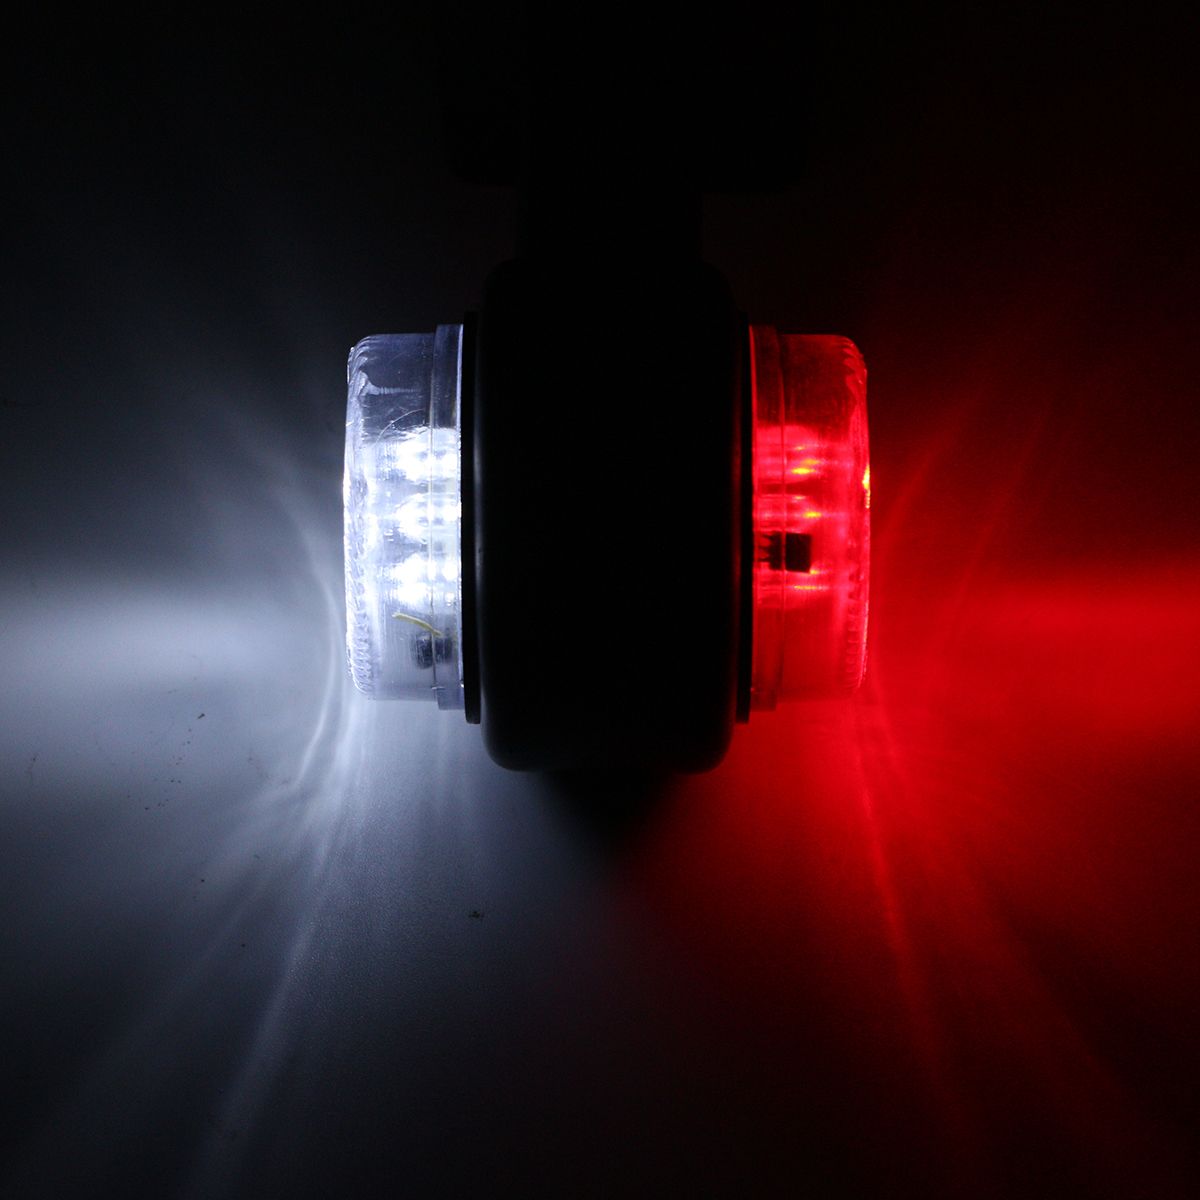 Pair-LED-Double-Side-Marker-Clearance-Lights-Lamp-Red-White-for-12V-24V-Truck-Trailer-Caravan-1633010